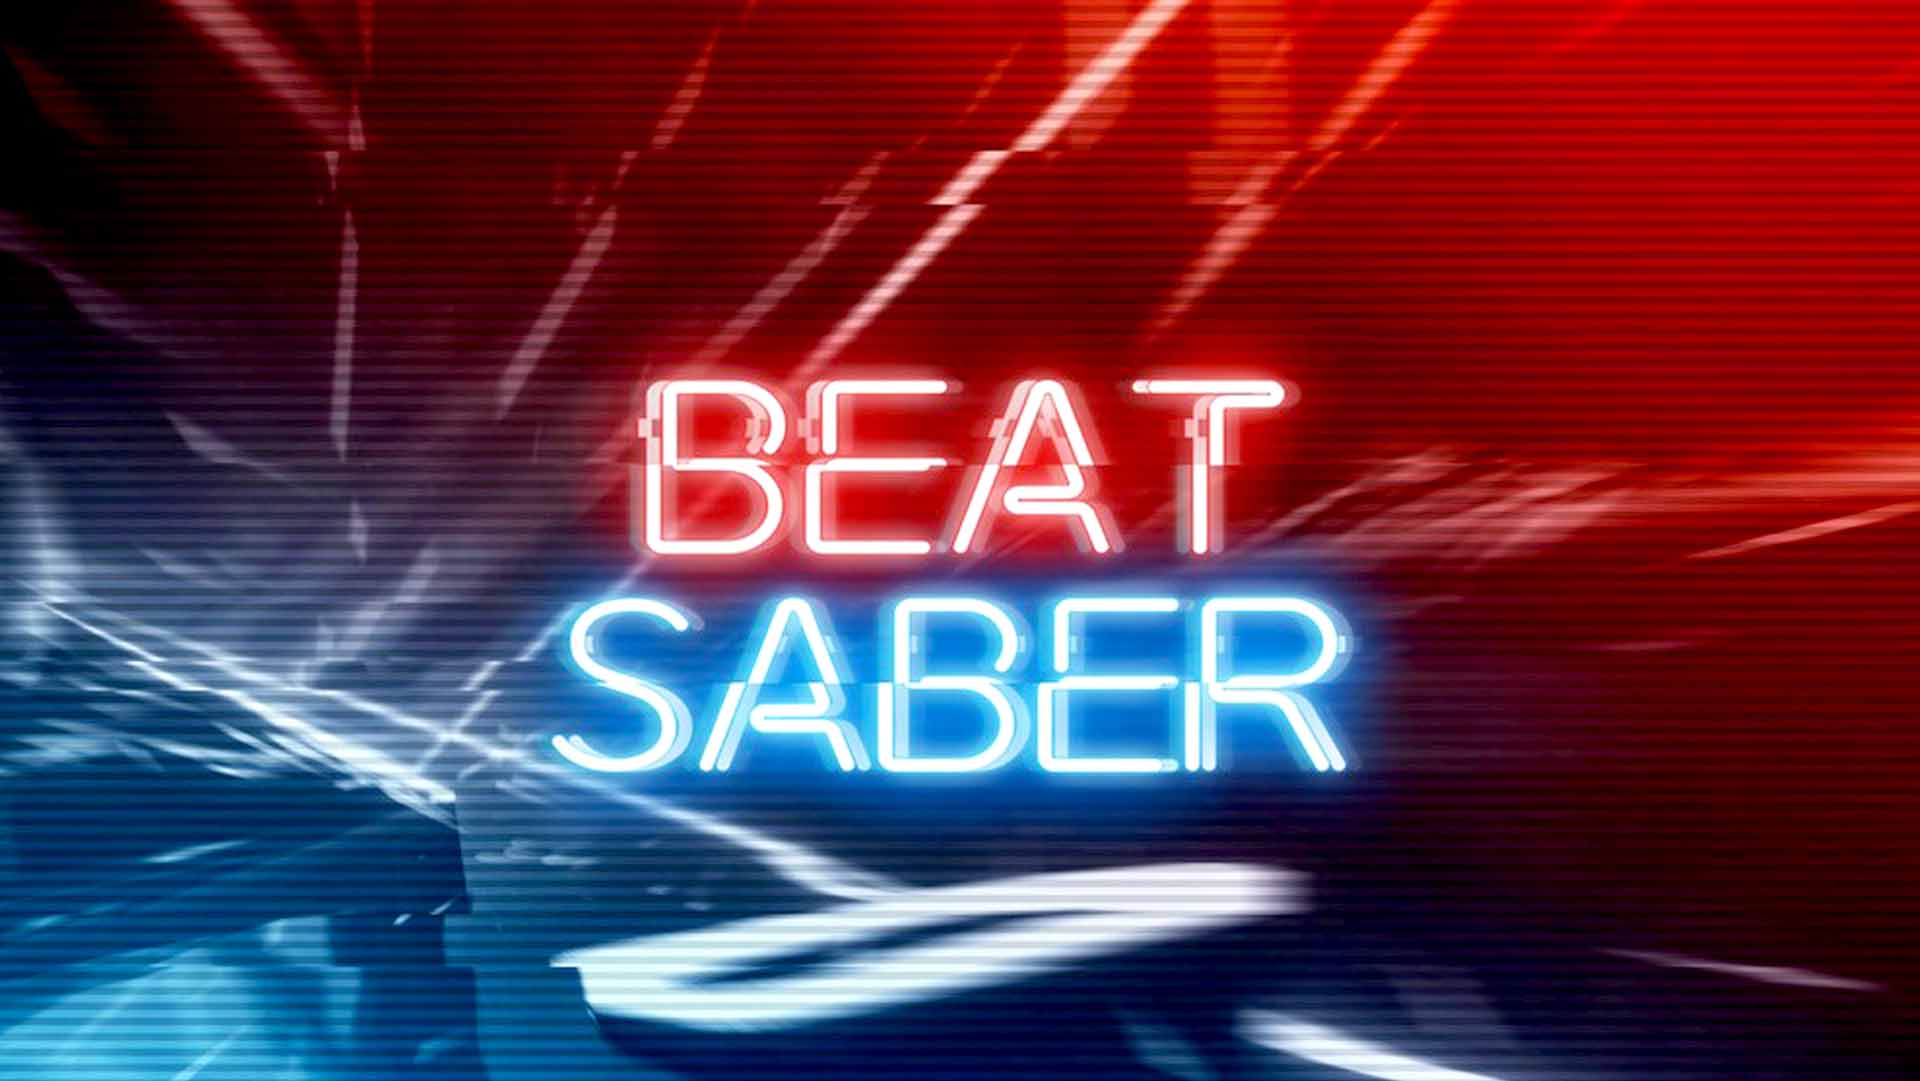 Beat Saber PS4 Version Full Game Free Download